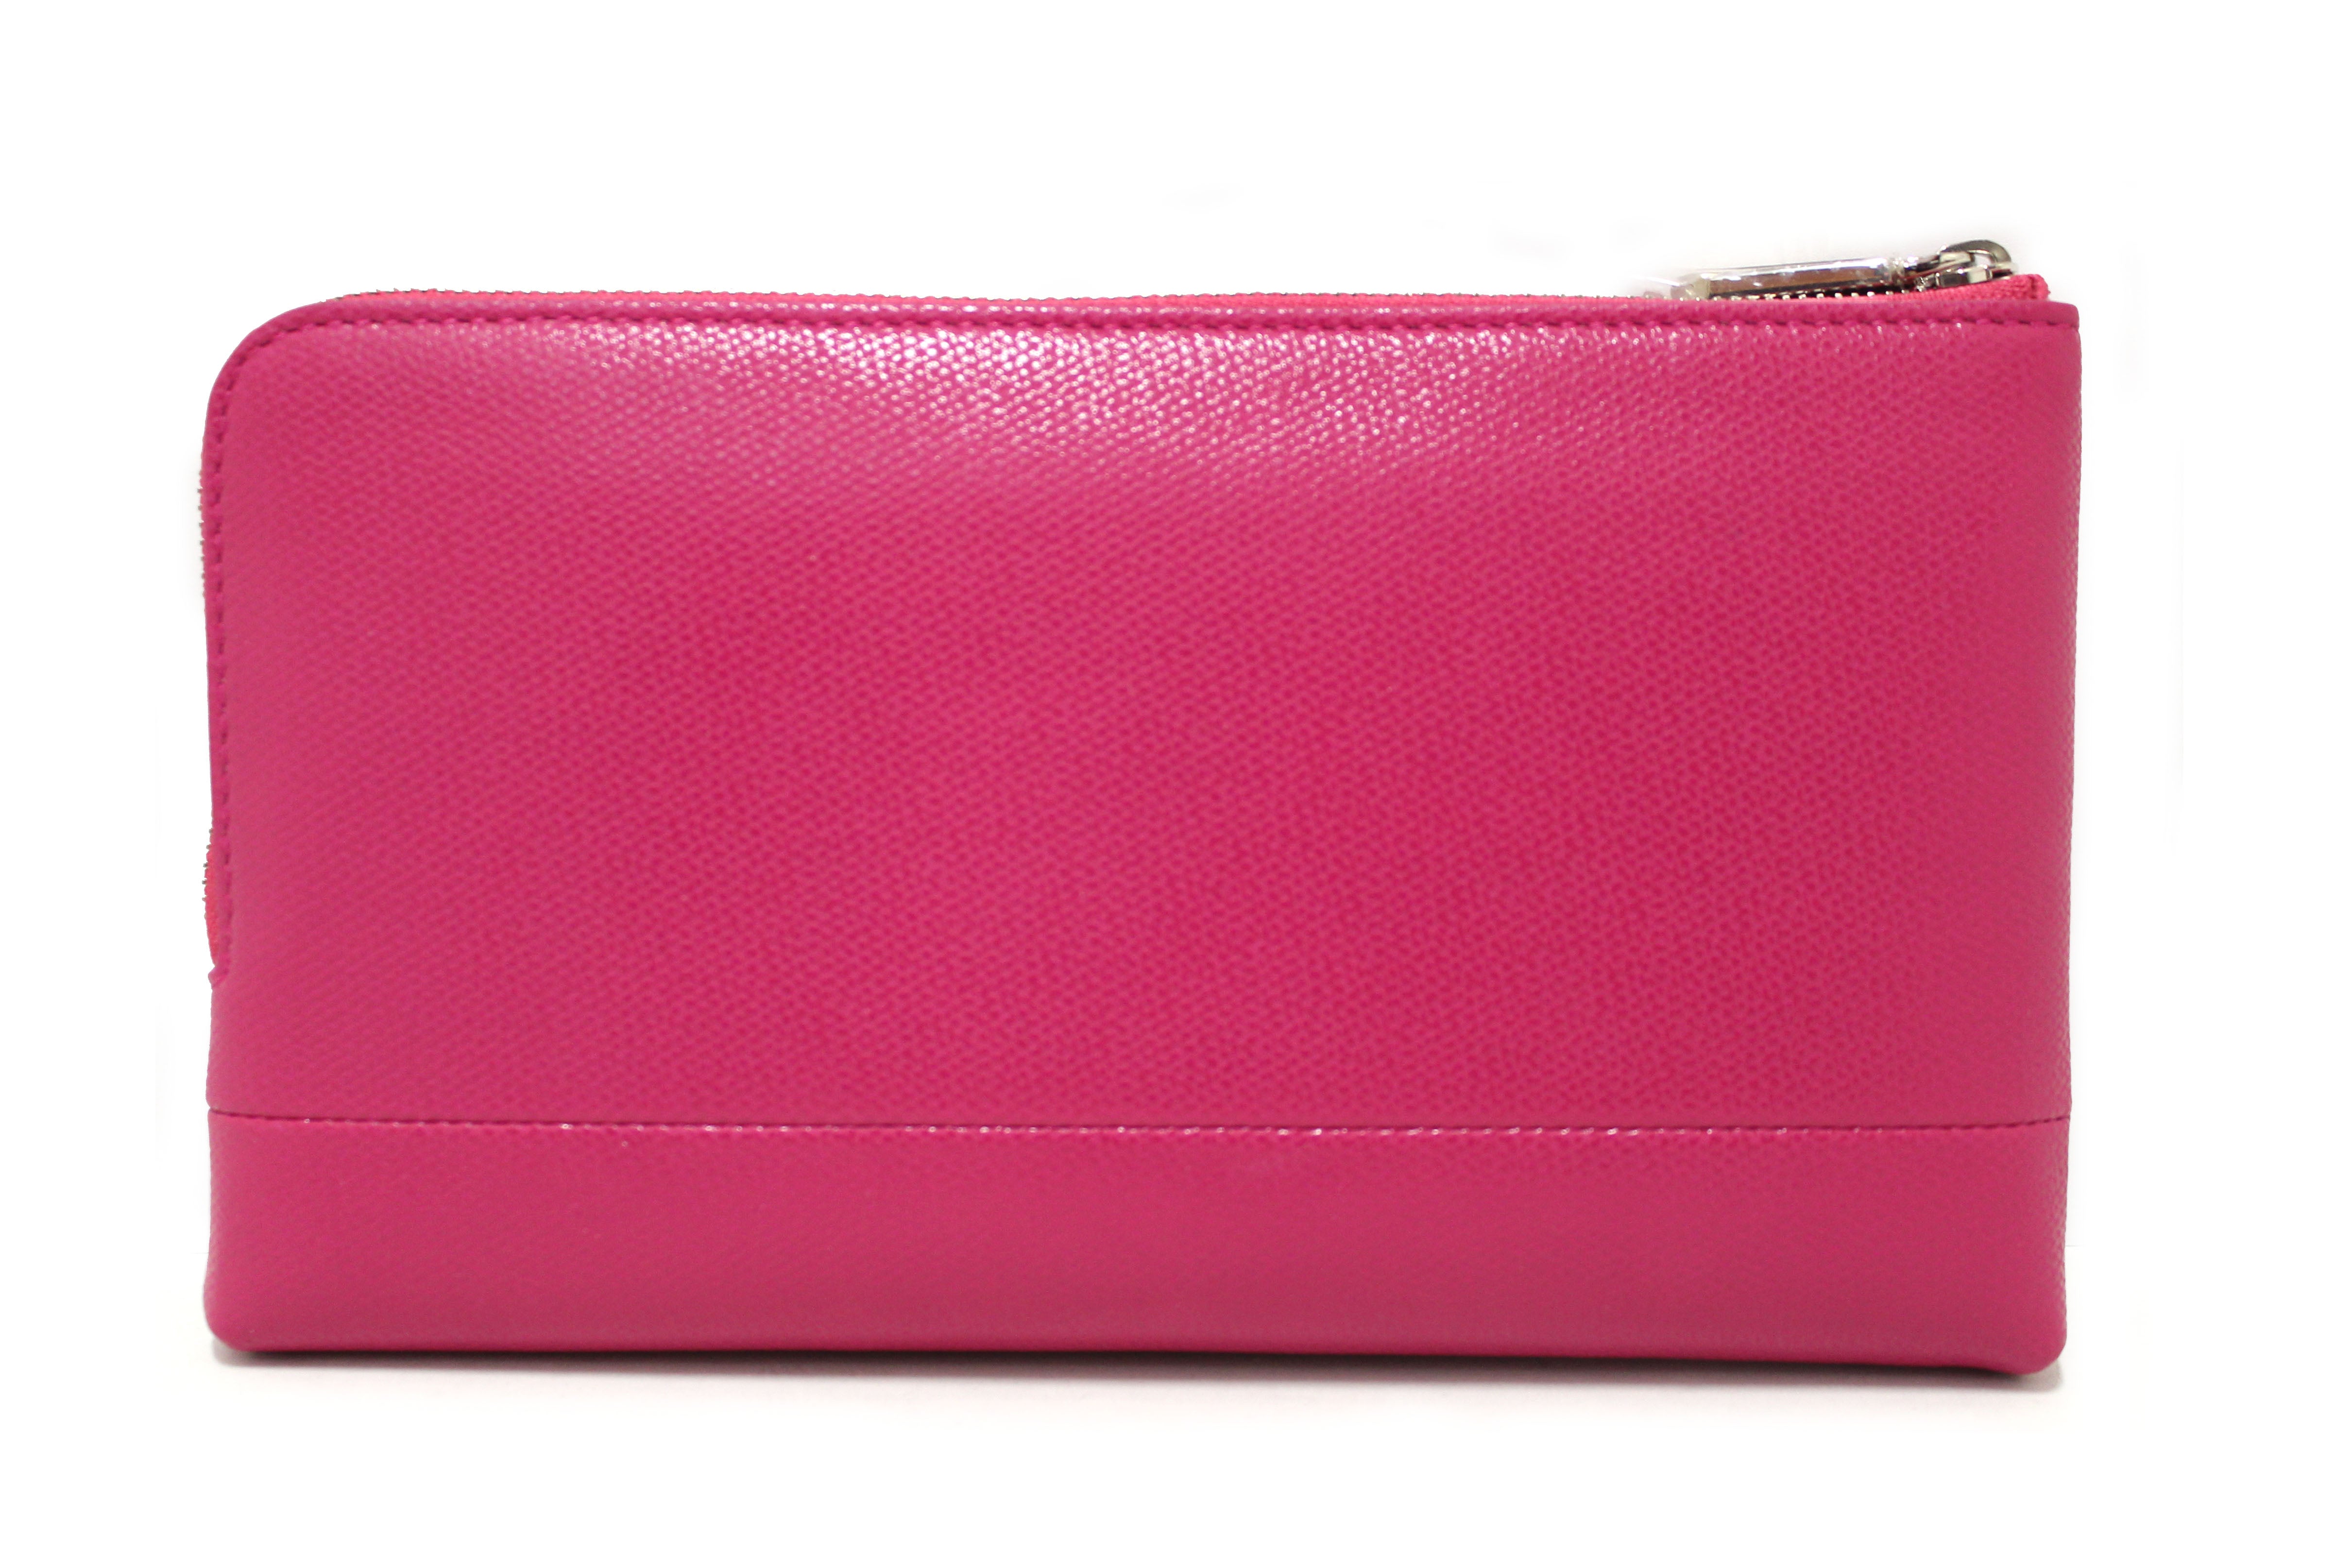 HCC X DUYP - Mini pochette - Brilliant Pink Grained Leather